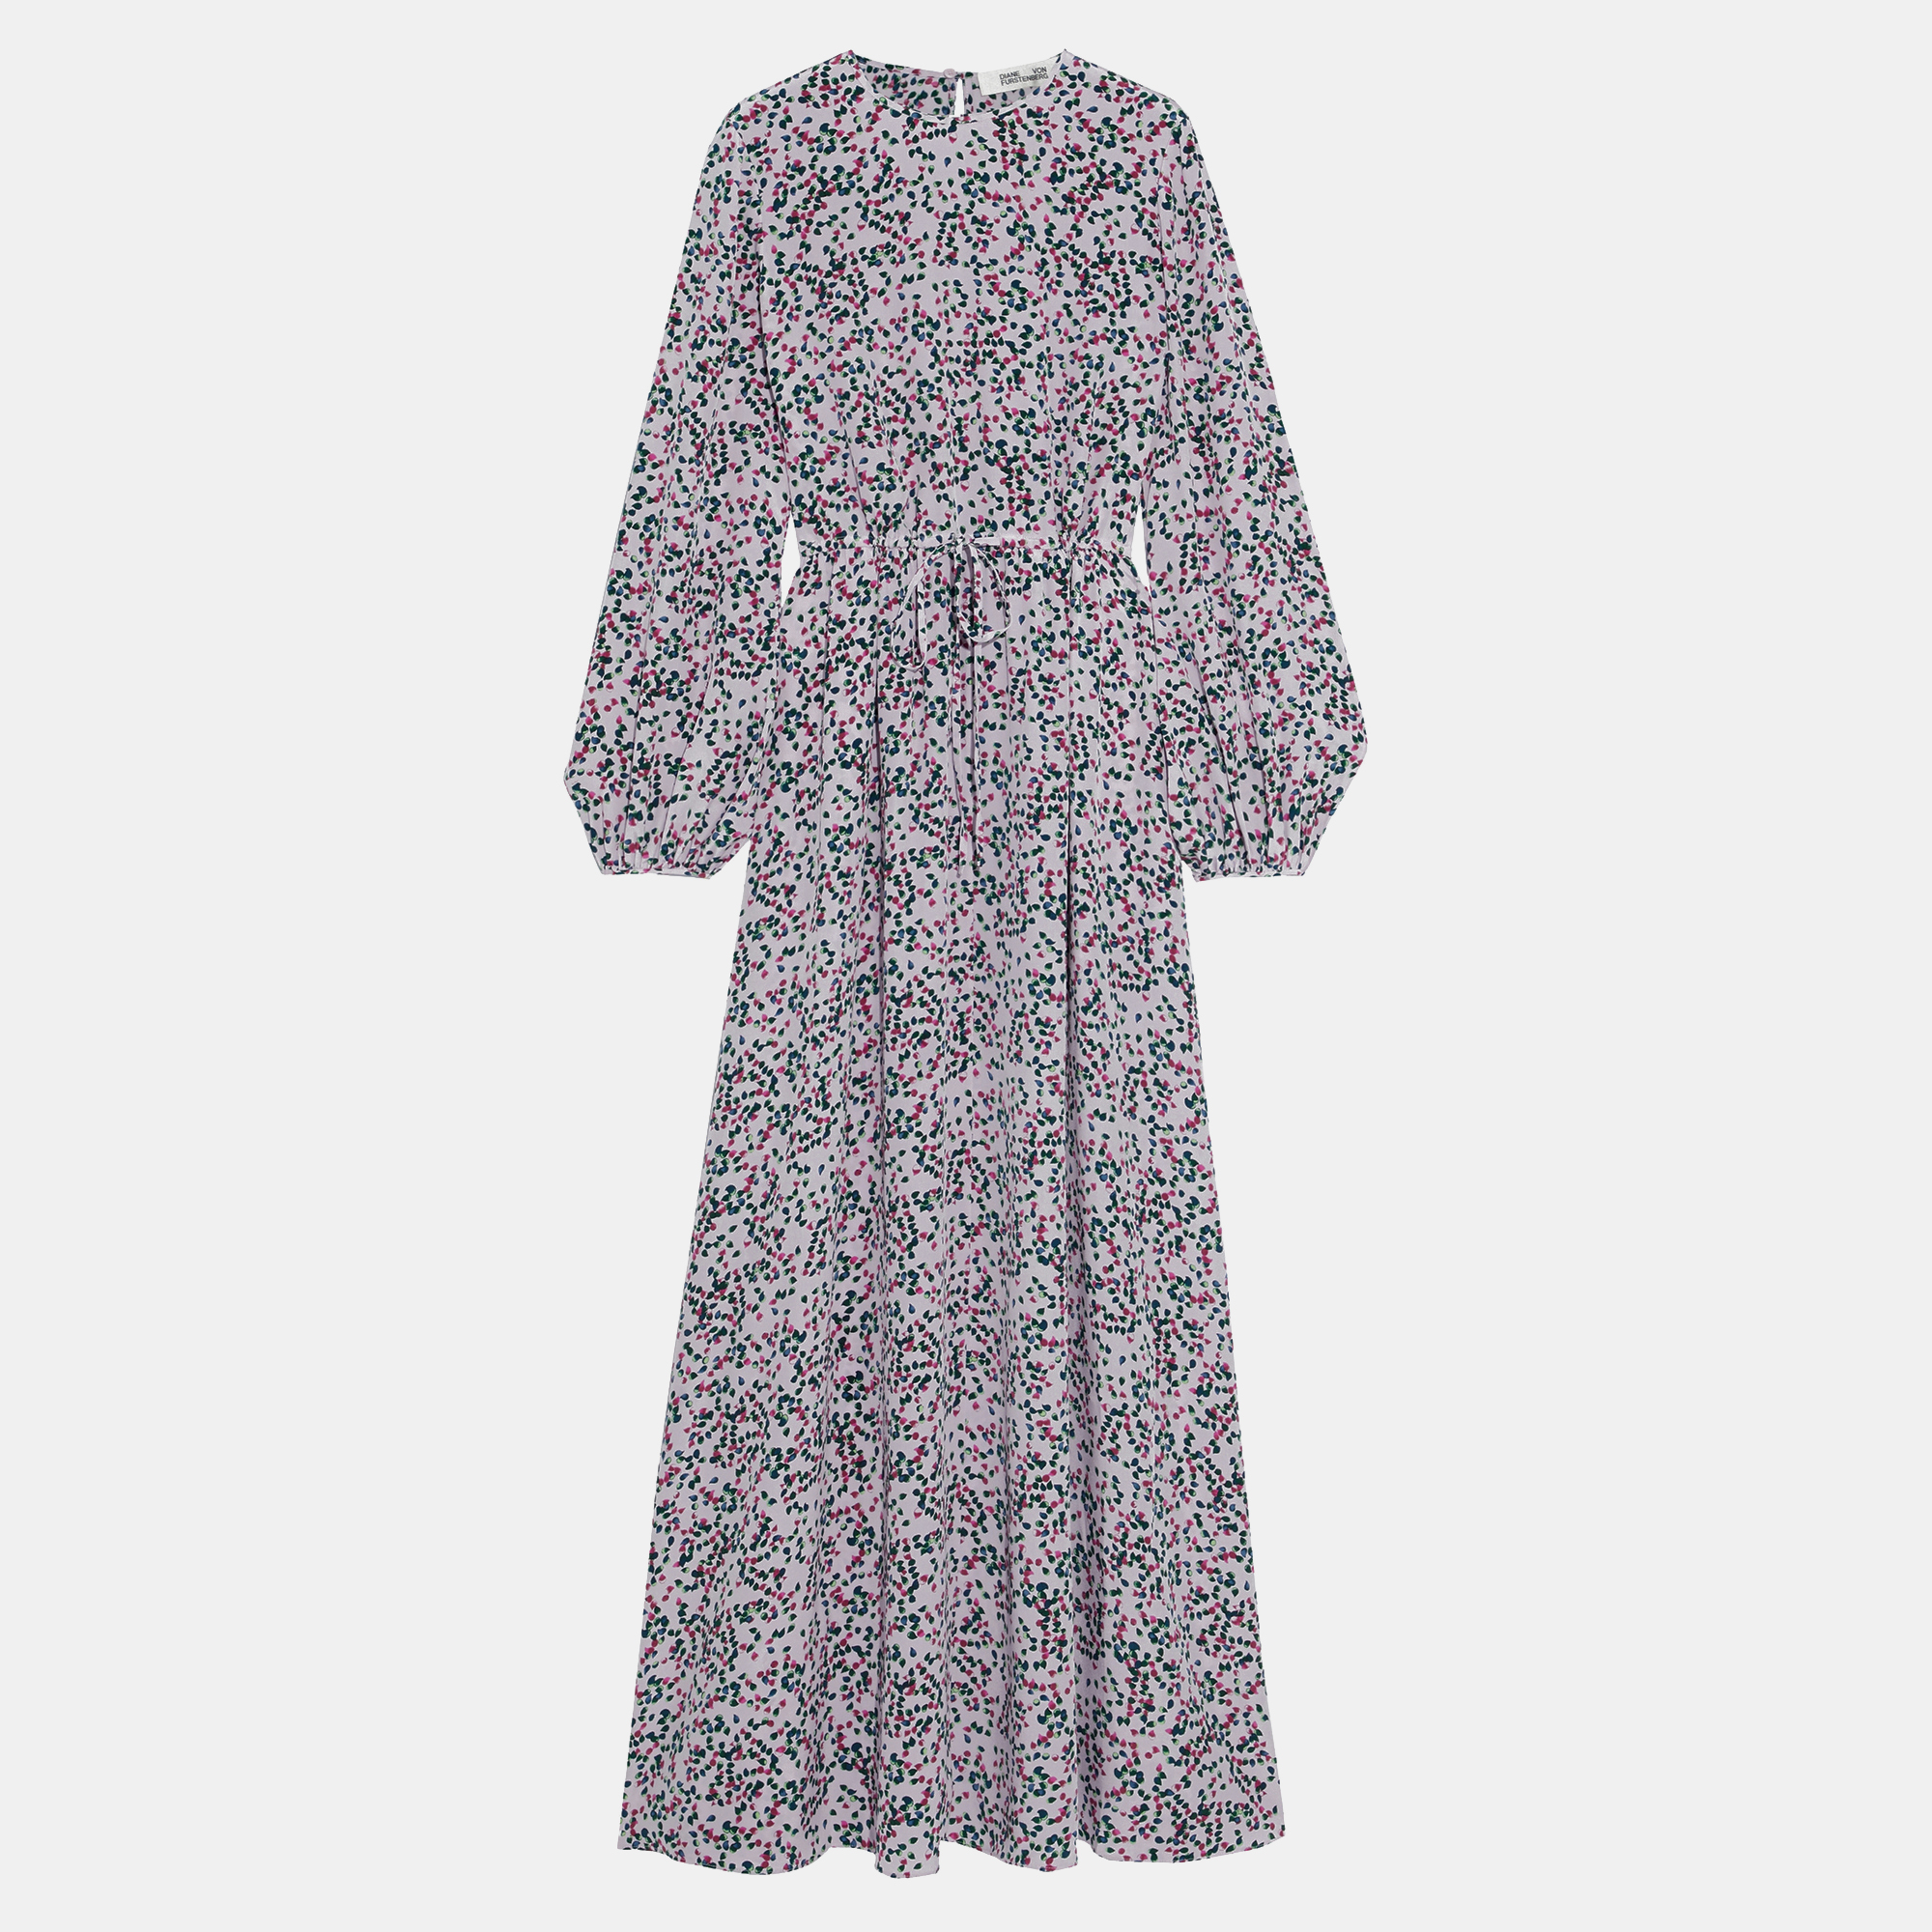 Diane von furstenberg silk maxi dress 10